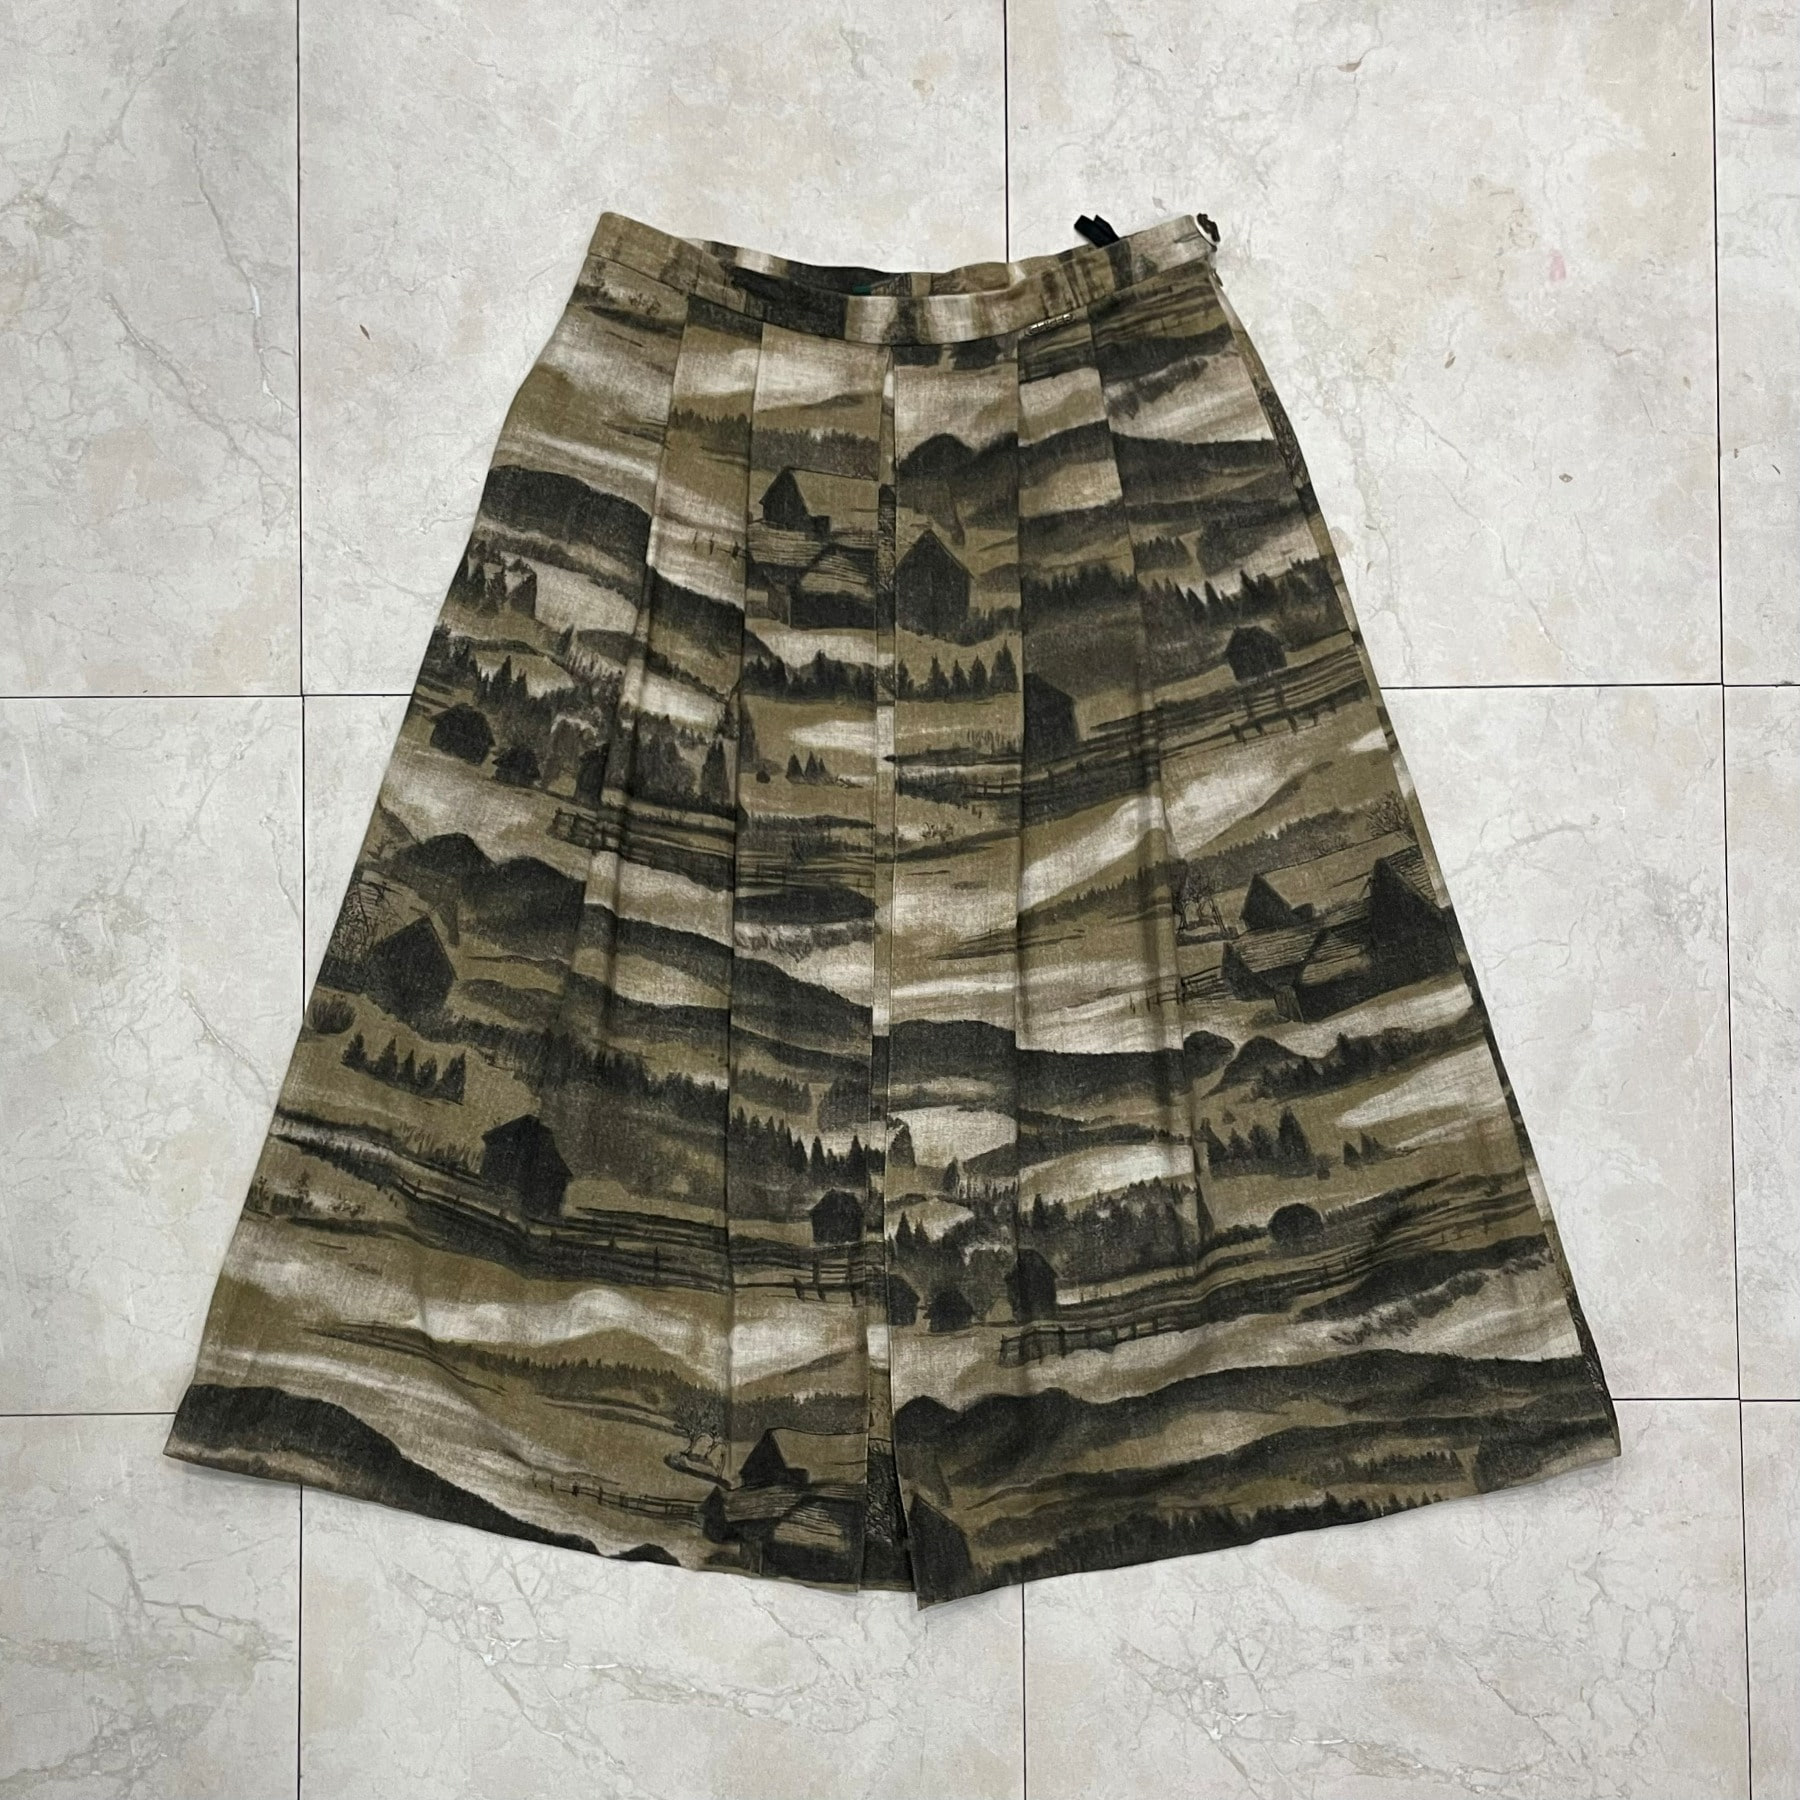 Geiger Wool Skirt (Made in AUSTRIA) - 44